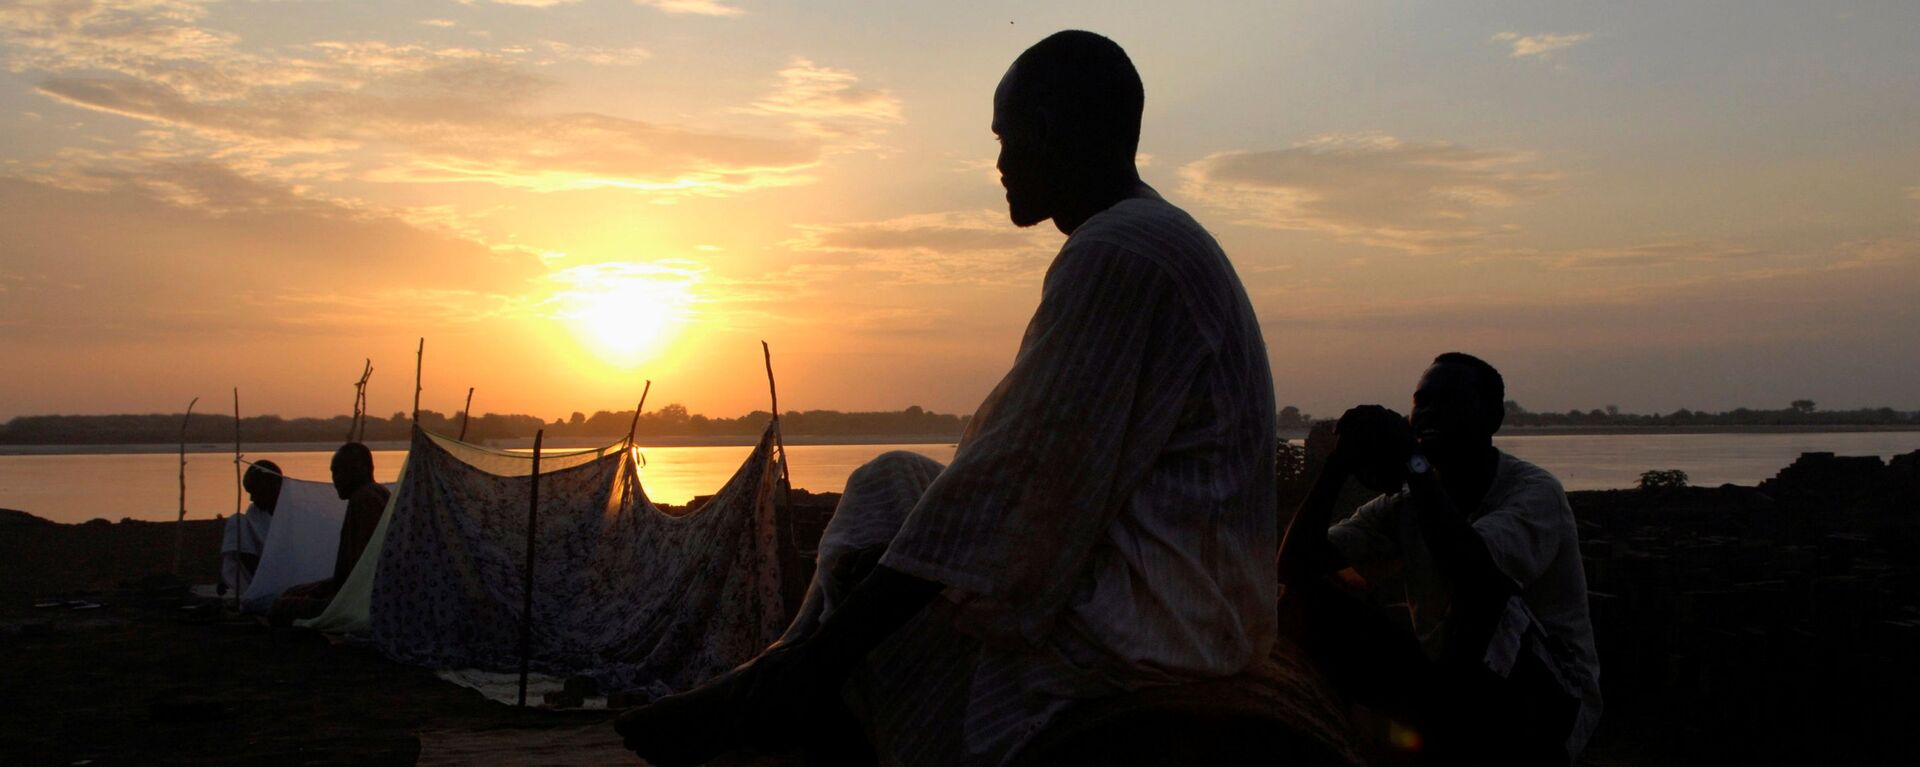 شخص يقف على خلفية غروب الشمس والنيل الأزرق في الخرطوم، السودان 8  يوليو 2007  - سبوتنيك عربي, 1920, 17.10.2021